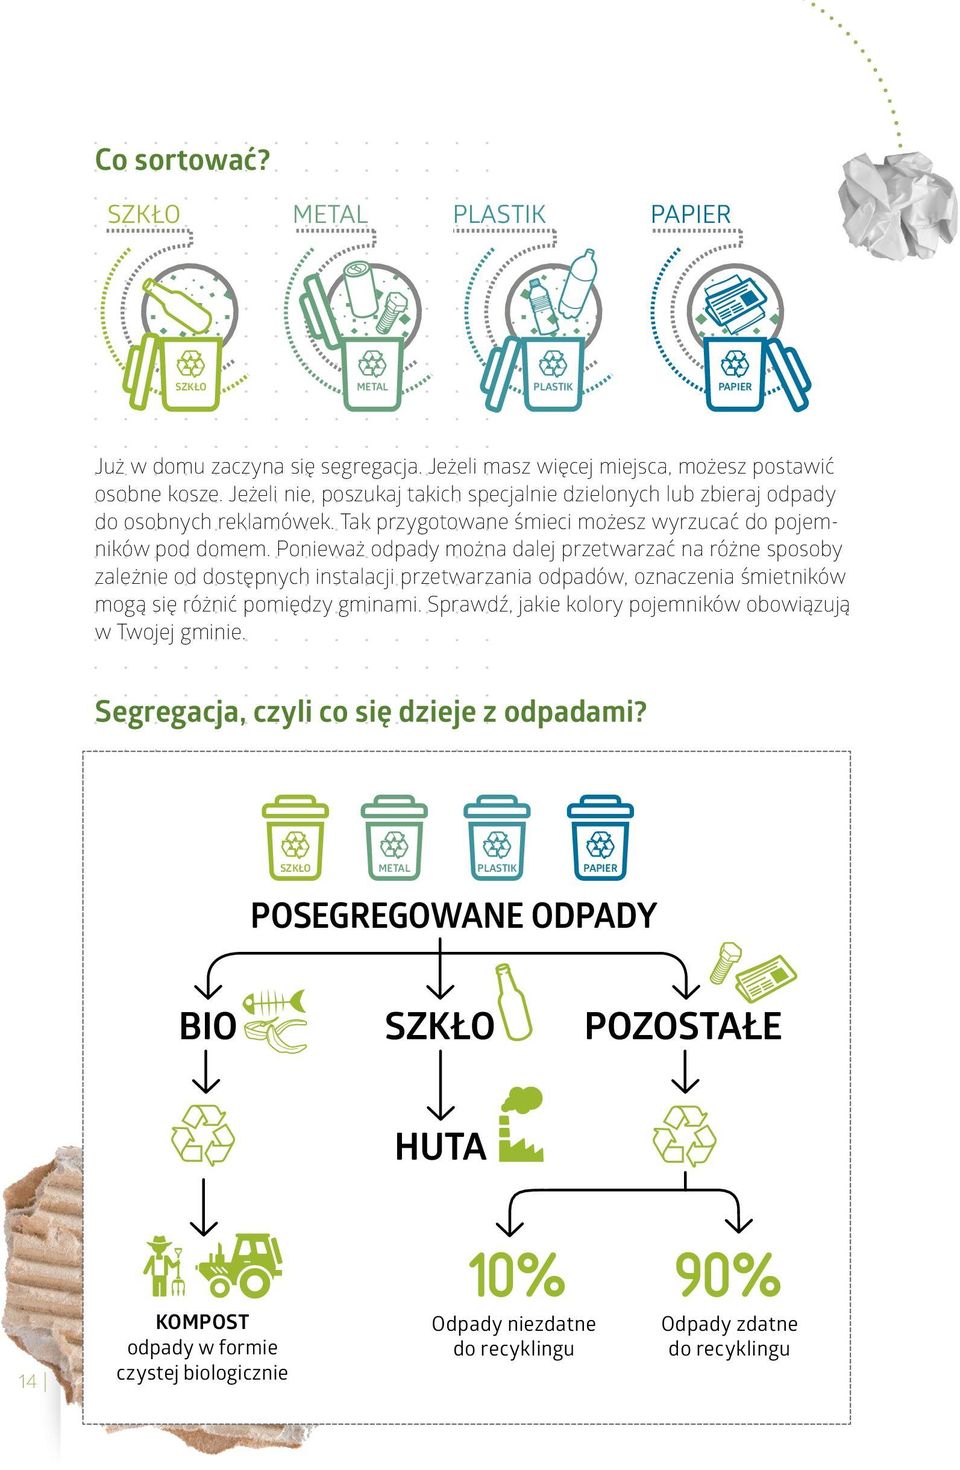 Ponieważ odpady można dalej przetwarzać na różne sposoby zależnie od dostępnych instalacji przetwarzania odpadów, oznaczenia śmietników mogą się różnić pomiędzy gminami.